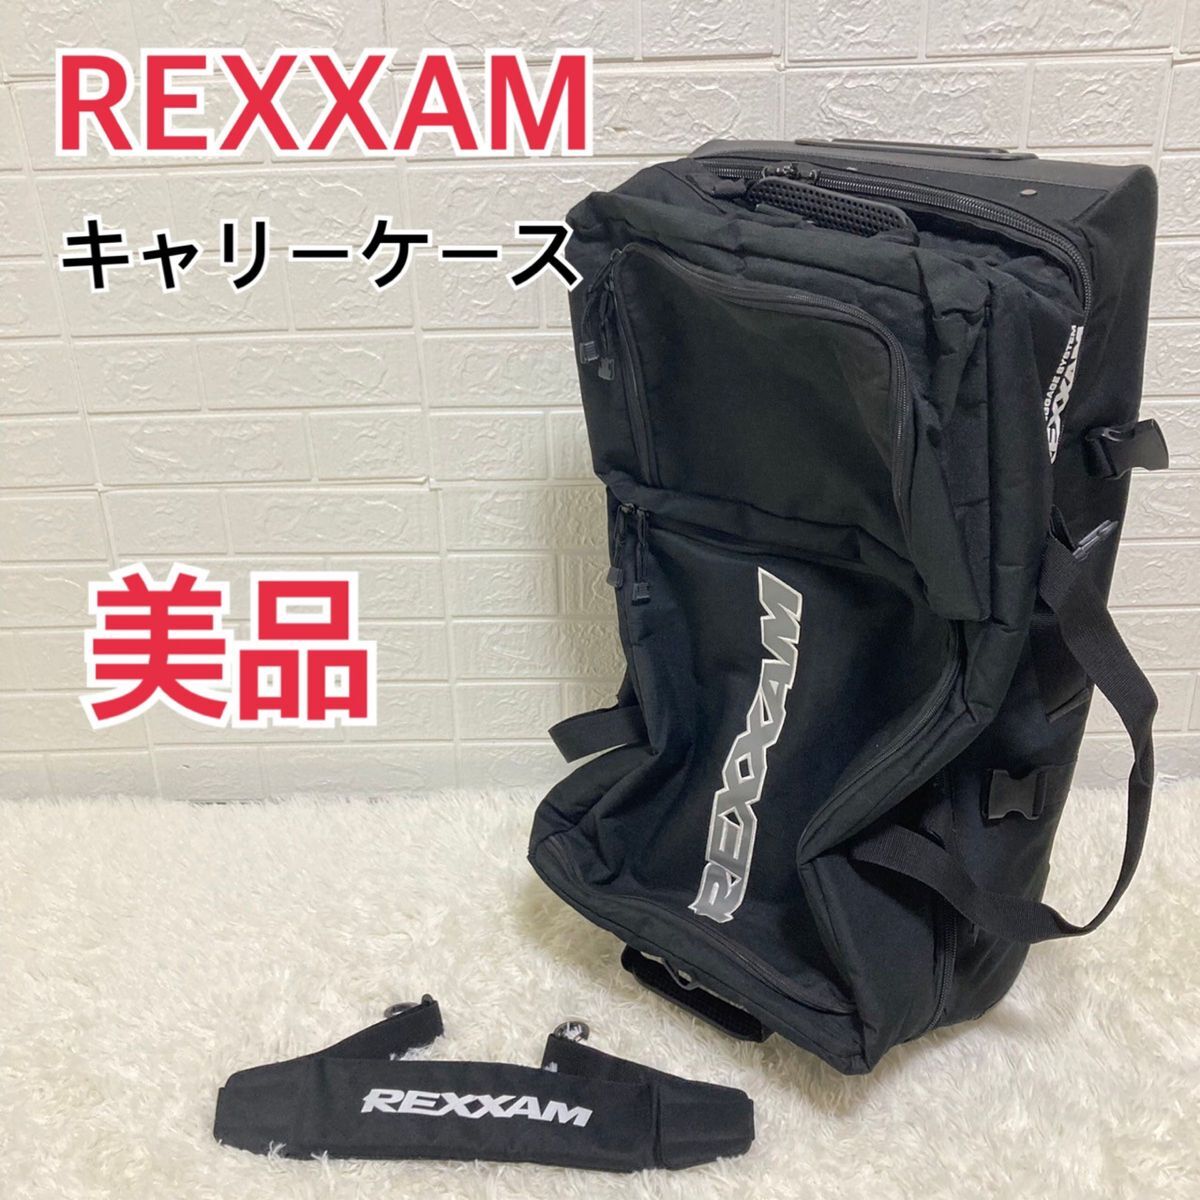 【美品】REXXAM レクザム スキー バッグ キャリーケース